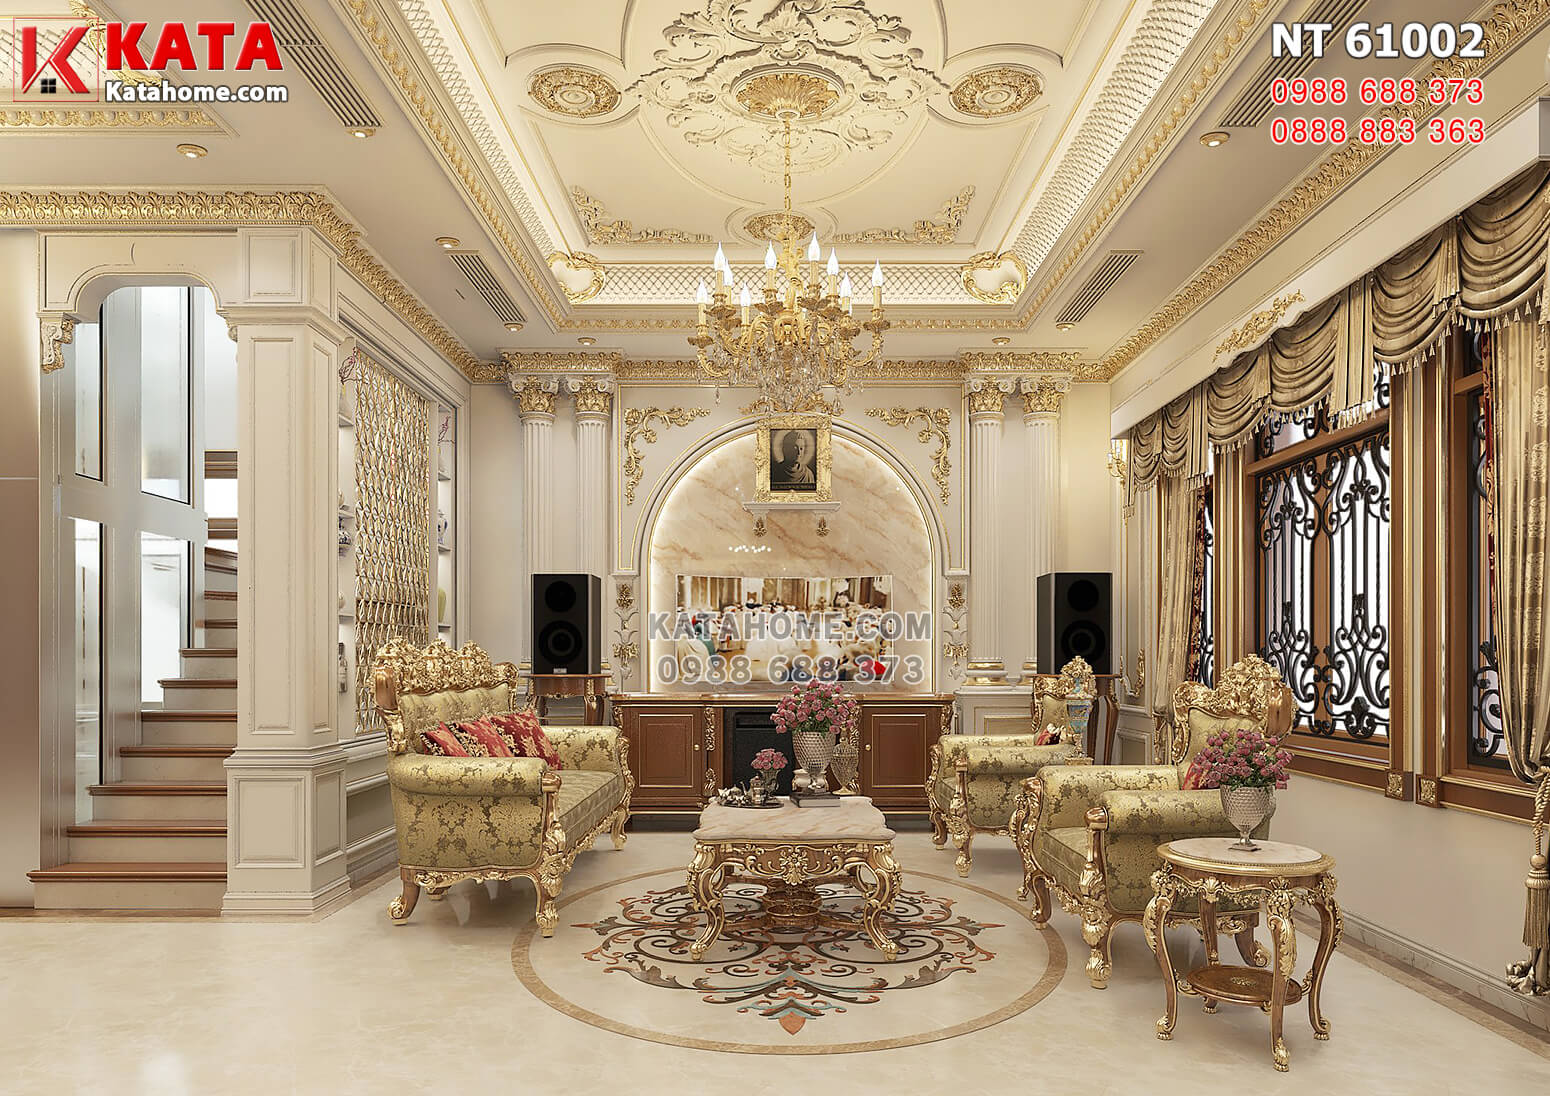 Hình ảnh: Thiết kế nội thất phòng khách đậm chất hoàng gia, quý tộc